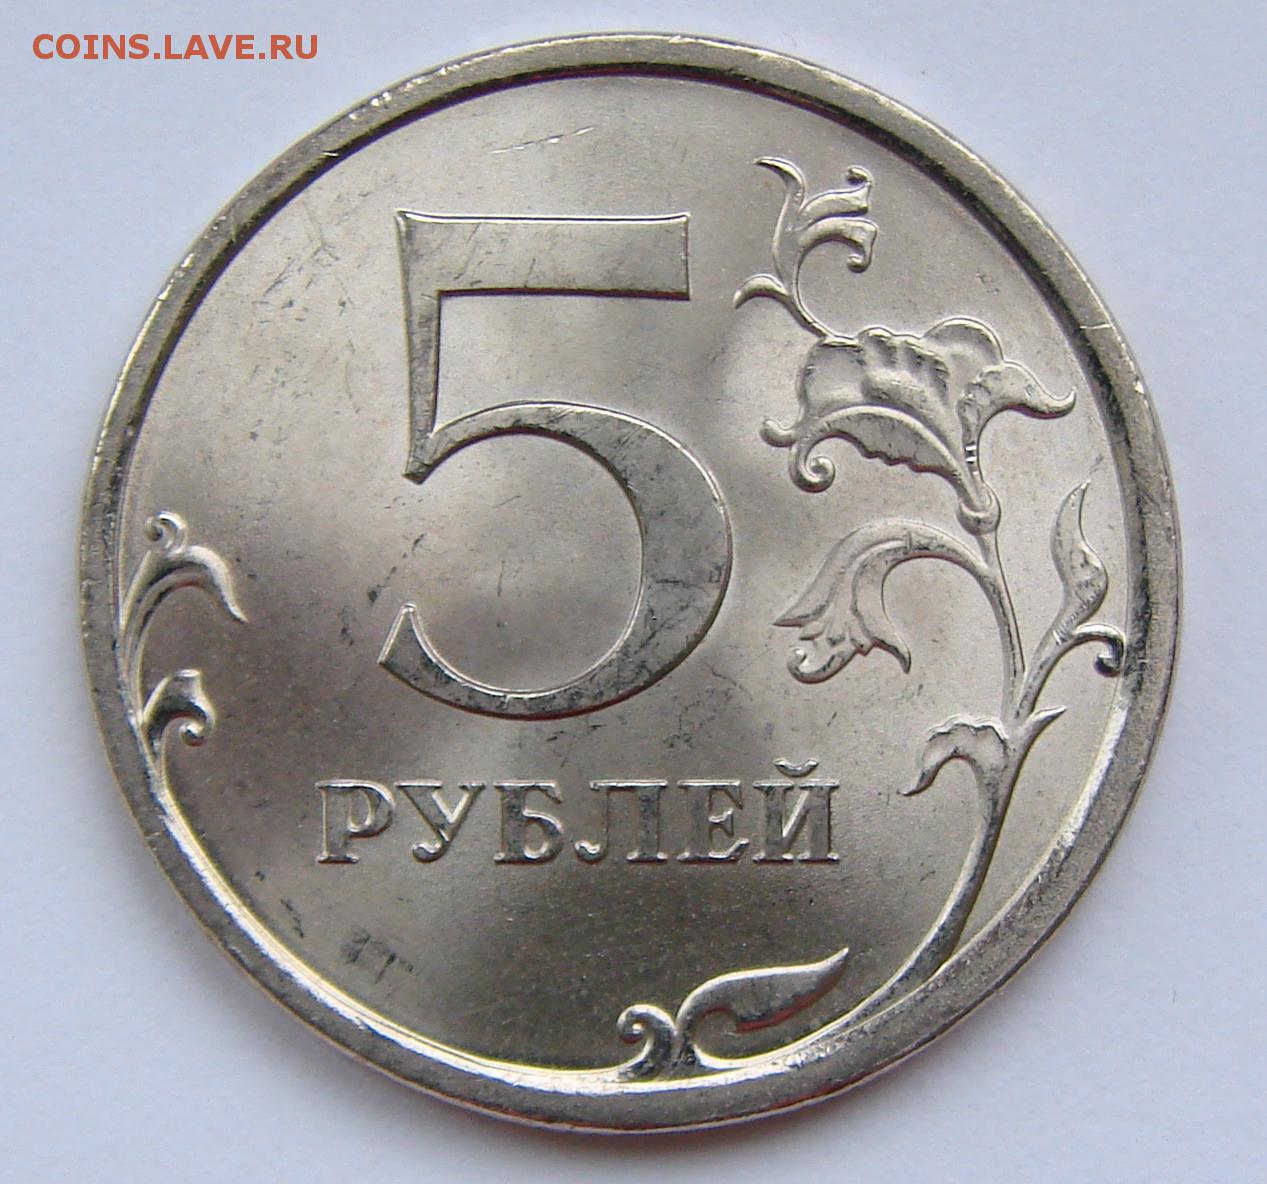 Монета 5 рублей весит. 5 Рублей 2009 СПМД немагнитная. 5 Рублей 2009 СПМД. 5 Рублей 16 года. 2009 Год 5 рублей вес.